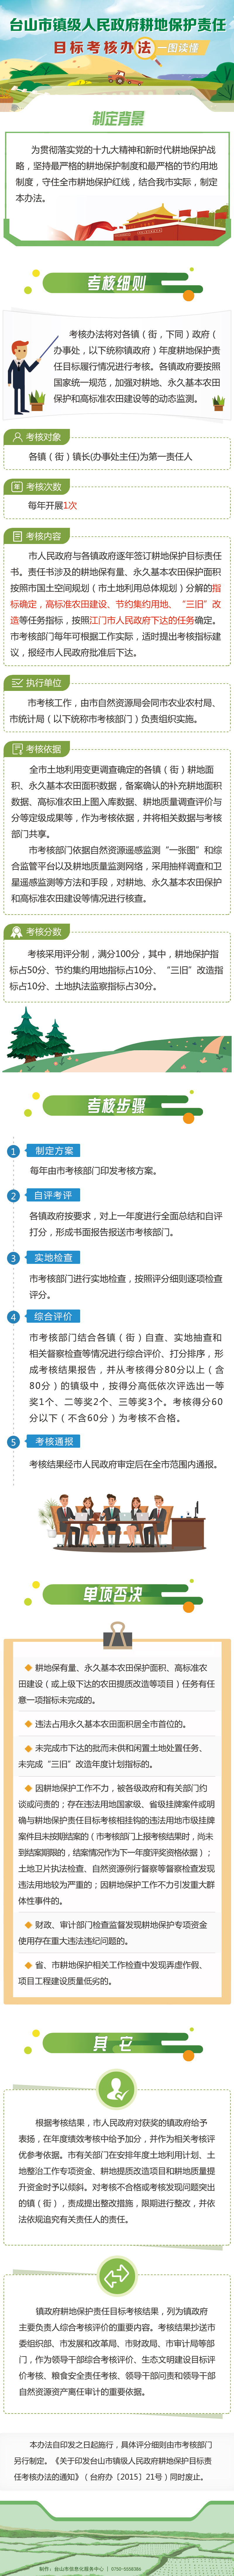 图解：台山市镇级人民政府耕地保护责任目标考核办法.jpg